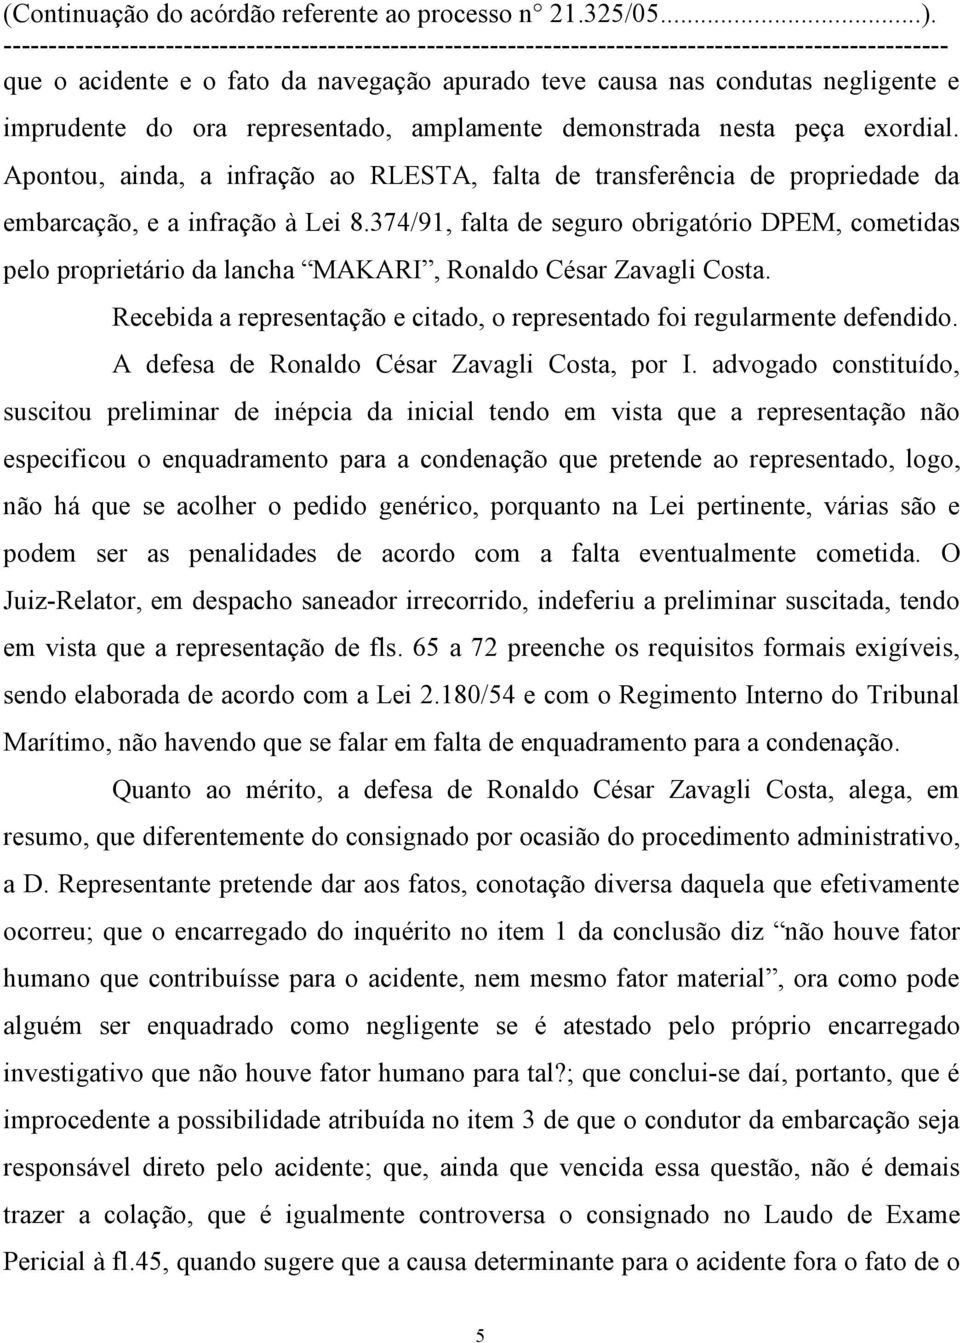 374/91, falta de seguro obrigatório DPEM, cometidas pelo proprietário da lancha MAKARI, Ronaldo César Zavagli Costa. Recebida a representação e citado, o representado foi regularmente defendido.